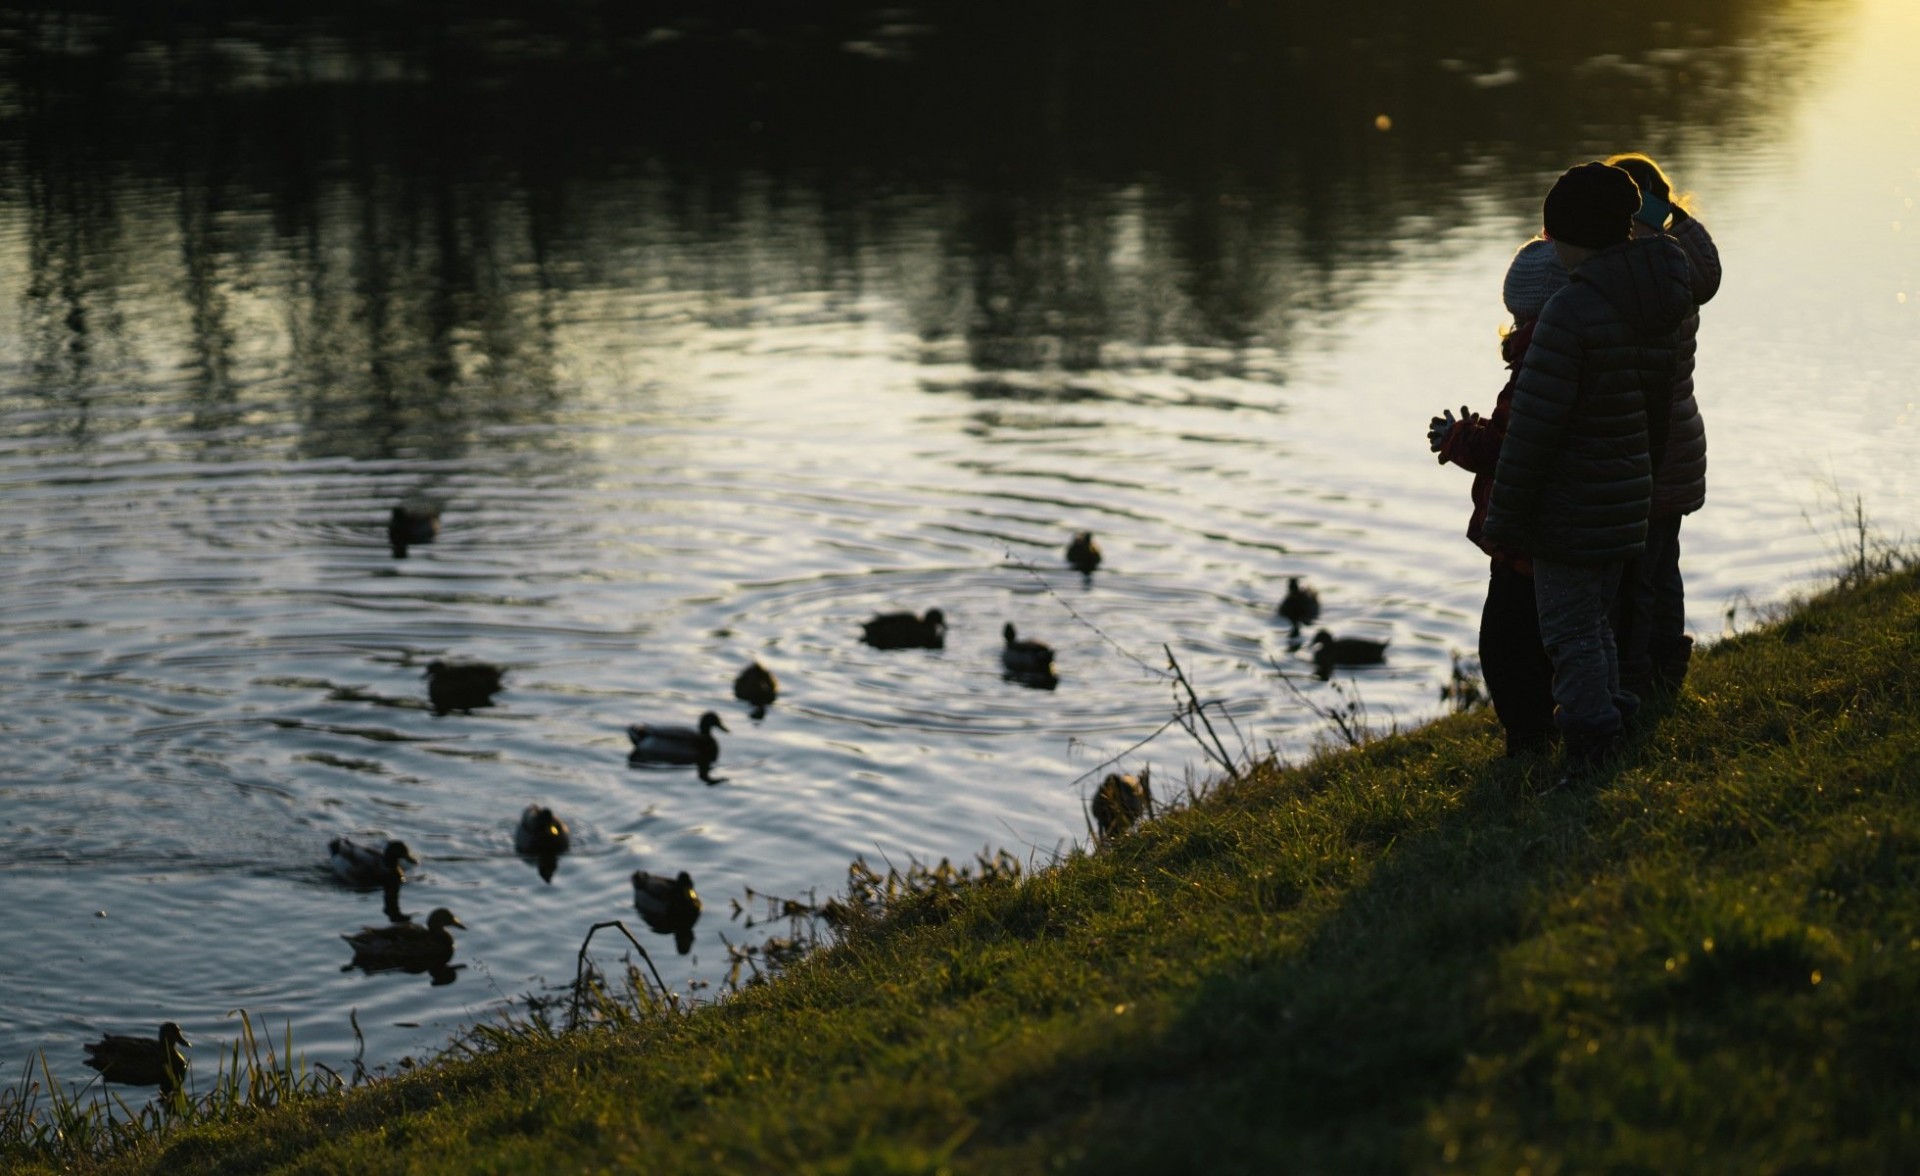 children watching ducks swim on pond